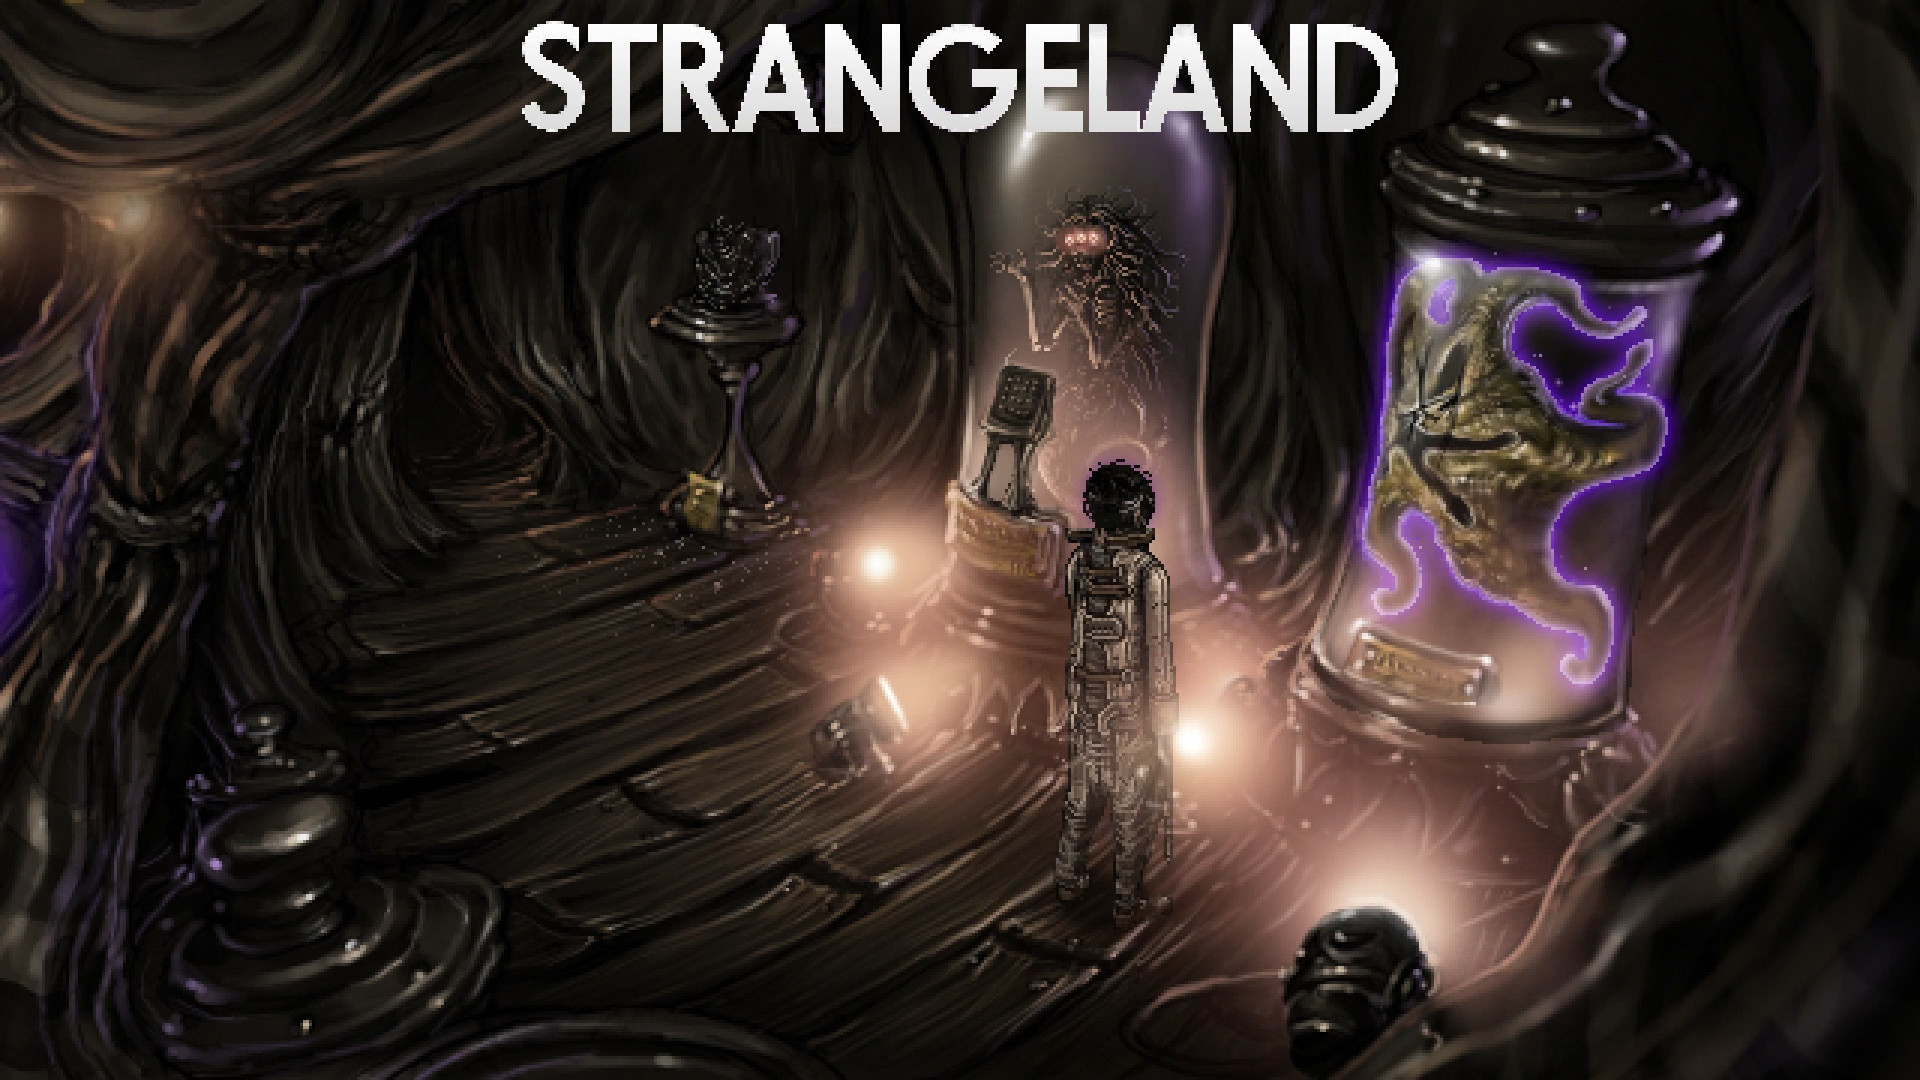 Nameless Mermaid – Let’s Play Strangeland Part Six (Mystery Mondays)